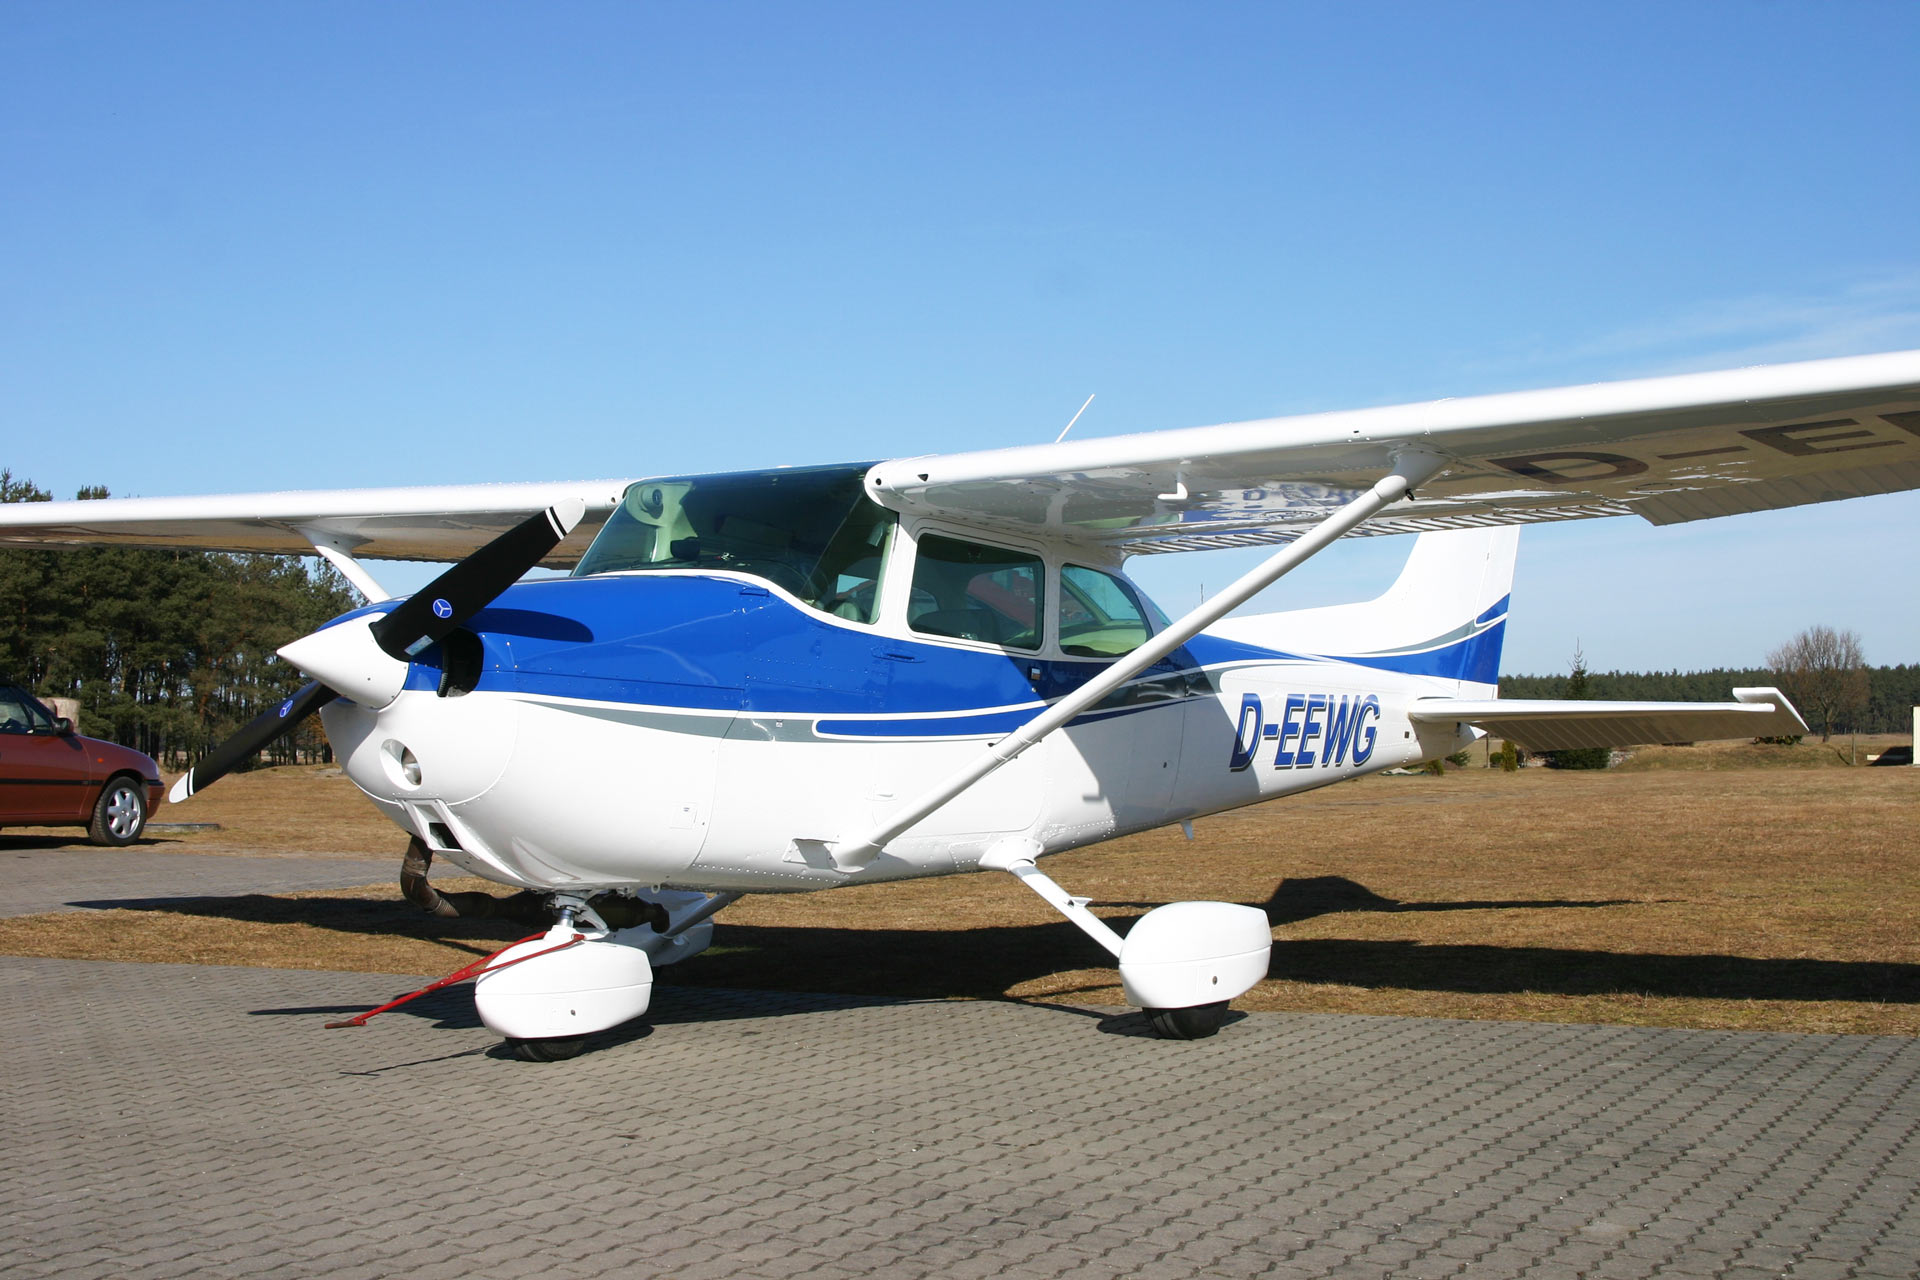 Mobil Air Flugplatzbetreiber & Flugzeugvermietung - Rundflüge Cessna